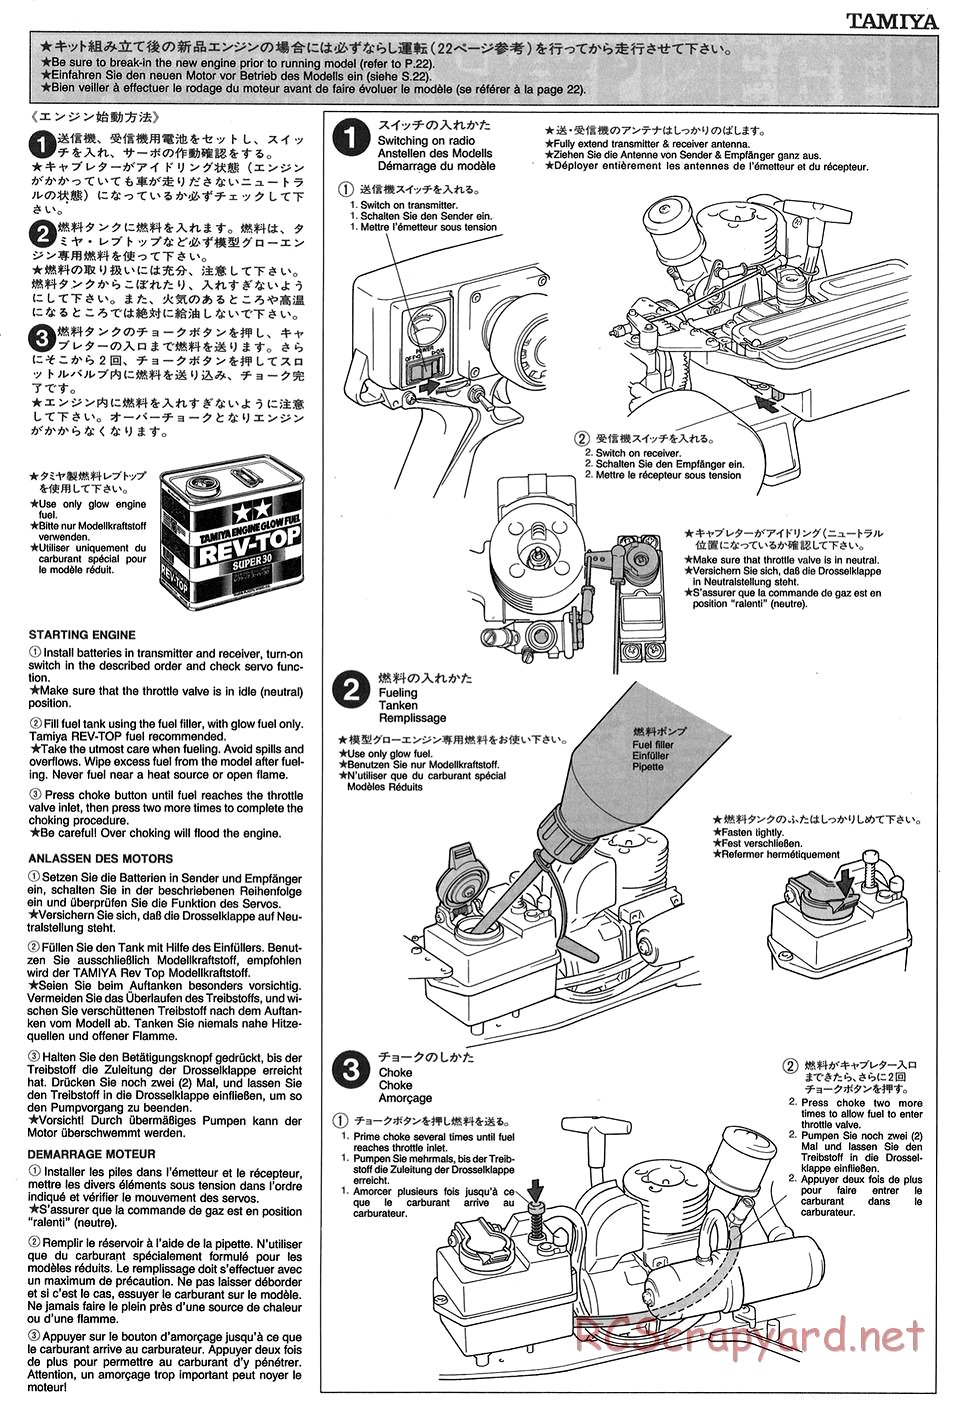 Tamiya - TGX Mk.1 Chassis - Manual - Page 20